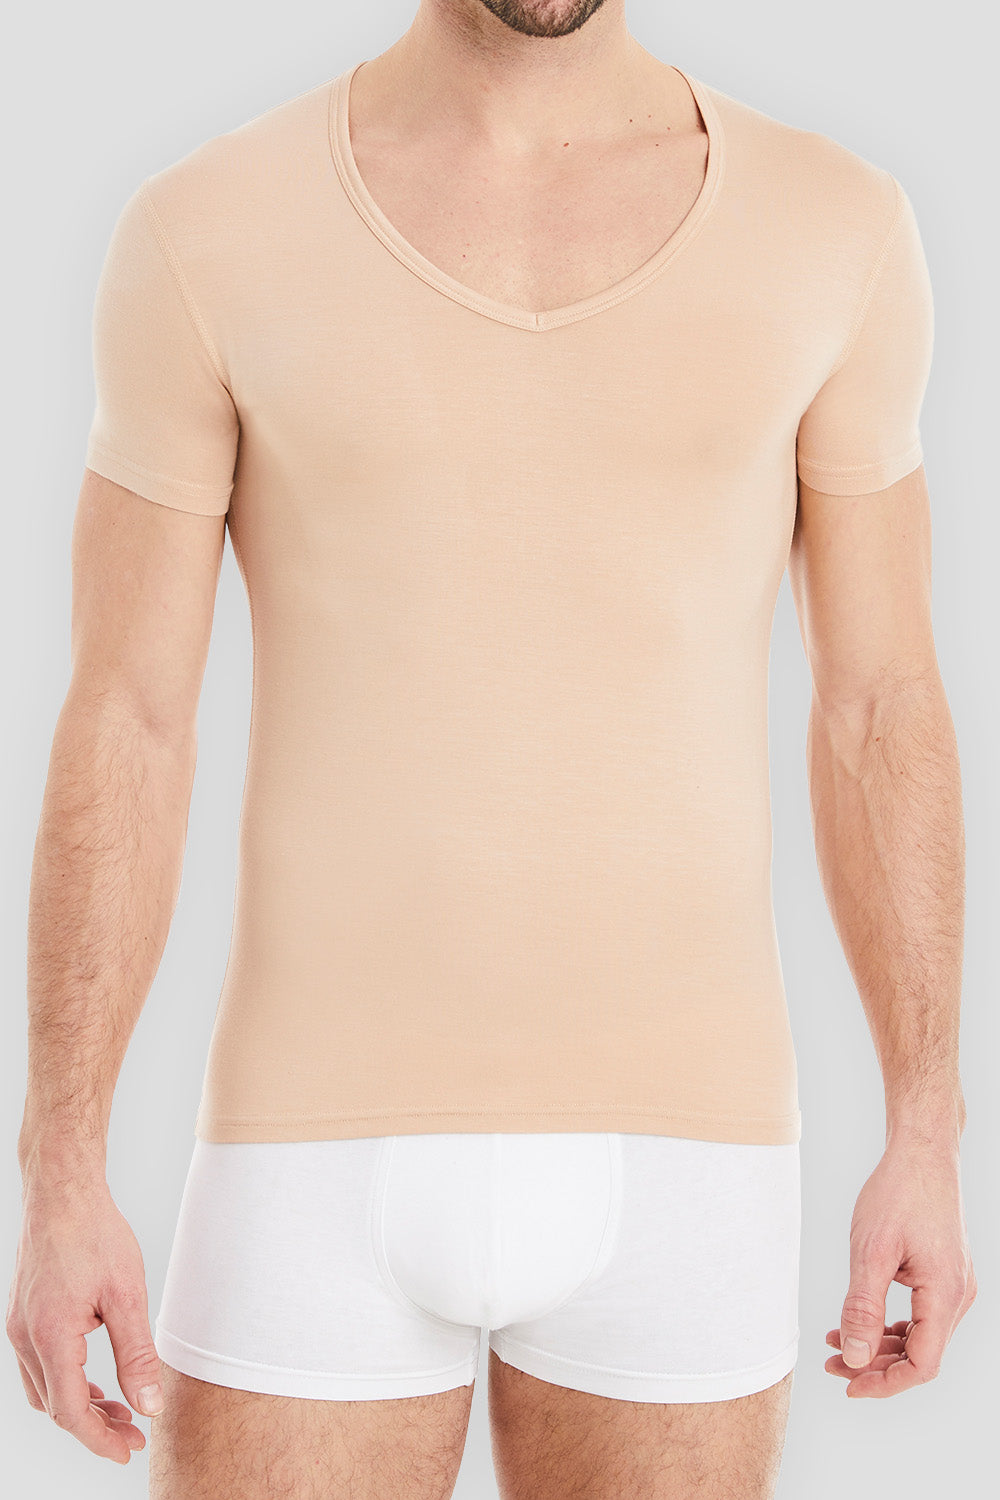 Modell präsentiert klassische Business-Unterhemden für Herren. Stilvoll und professionell - perfekt für jeden Anlass.